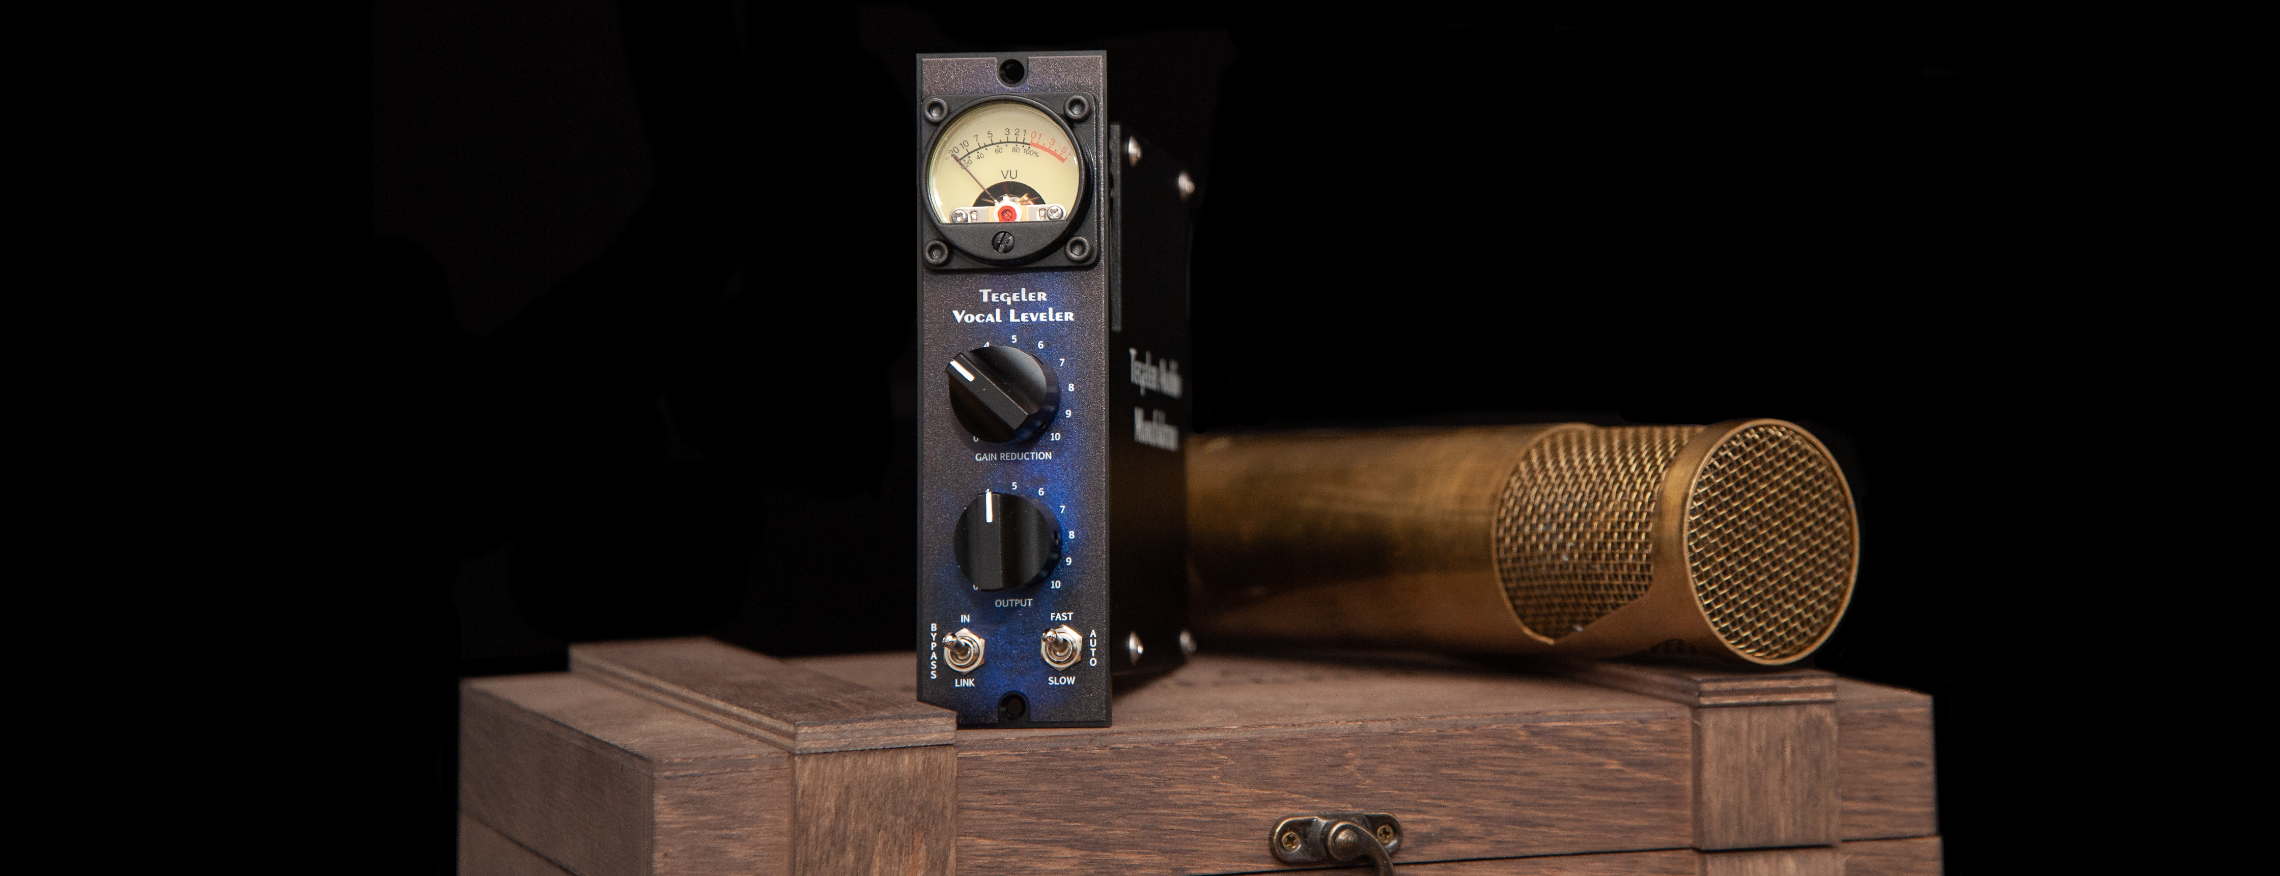 Tegeler Audio Manufaktur Vocal Leveler 500 - System-500-komponenten - Variation 1